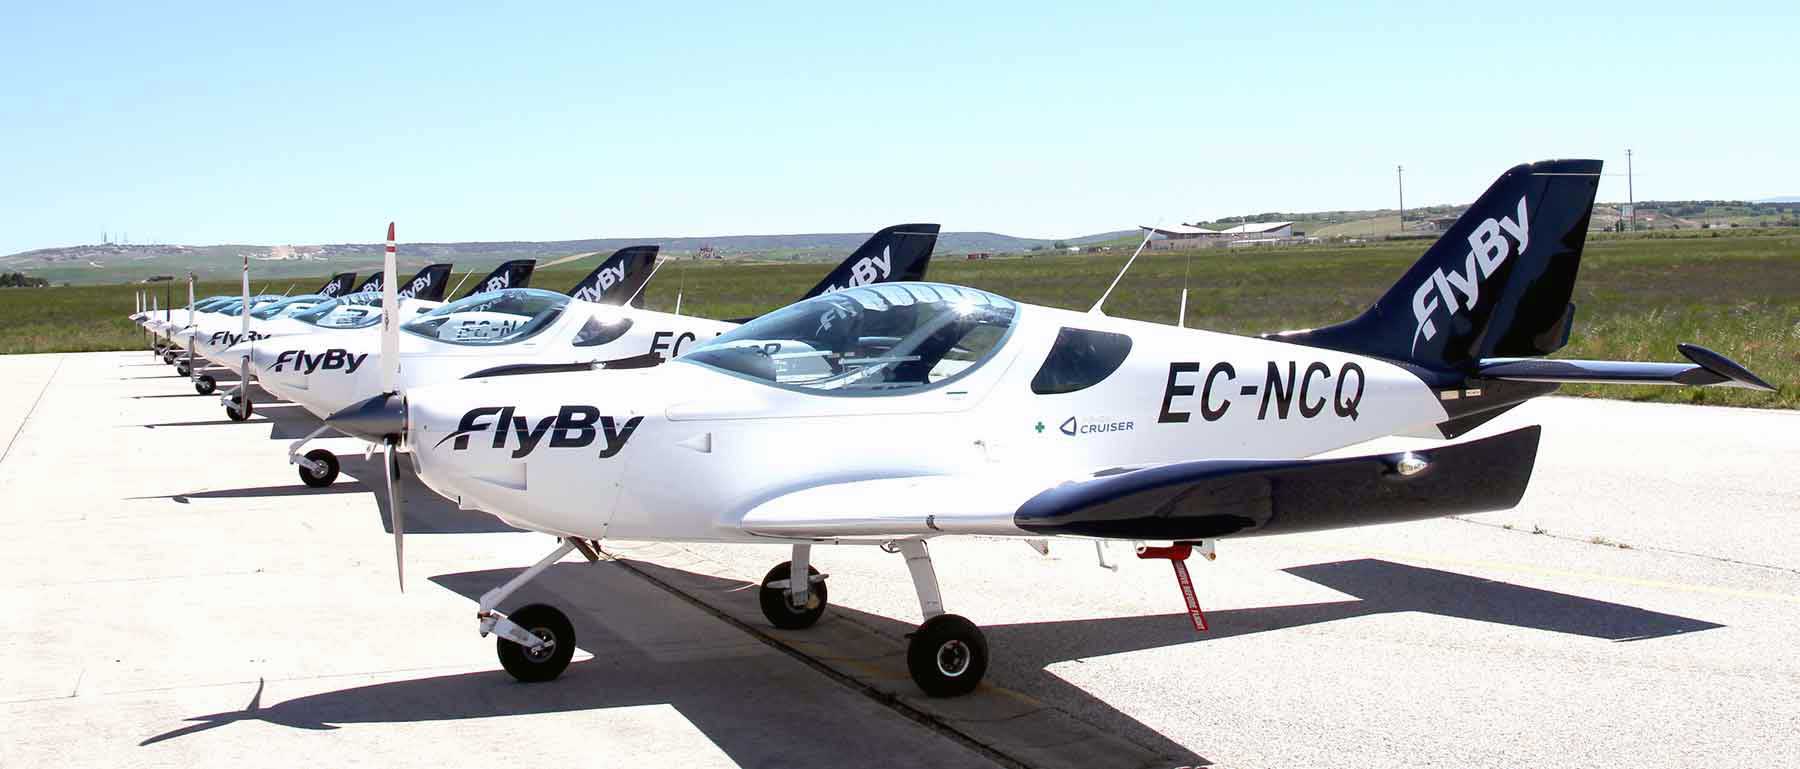 FlyBy fleet